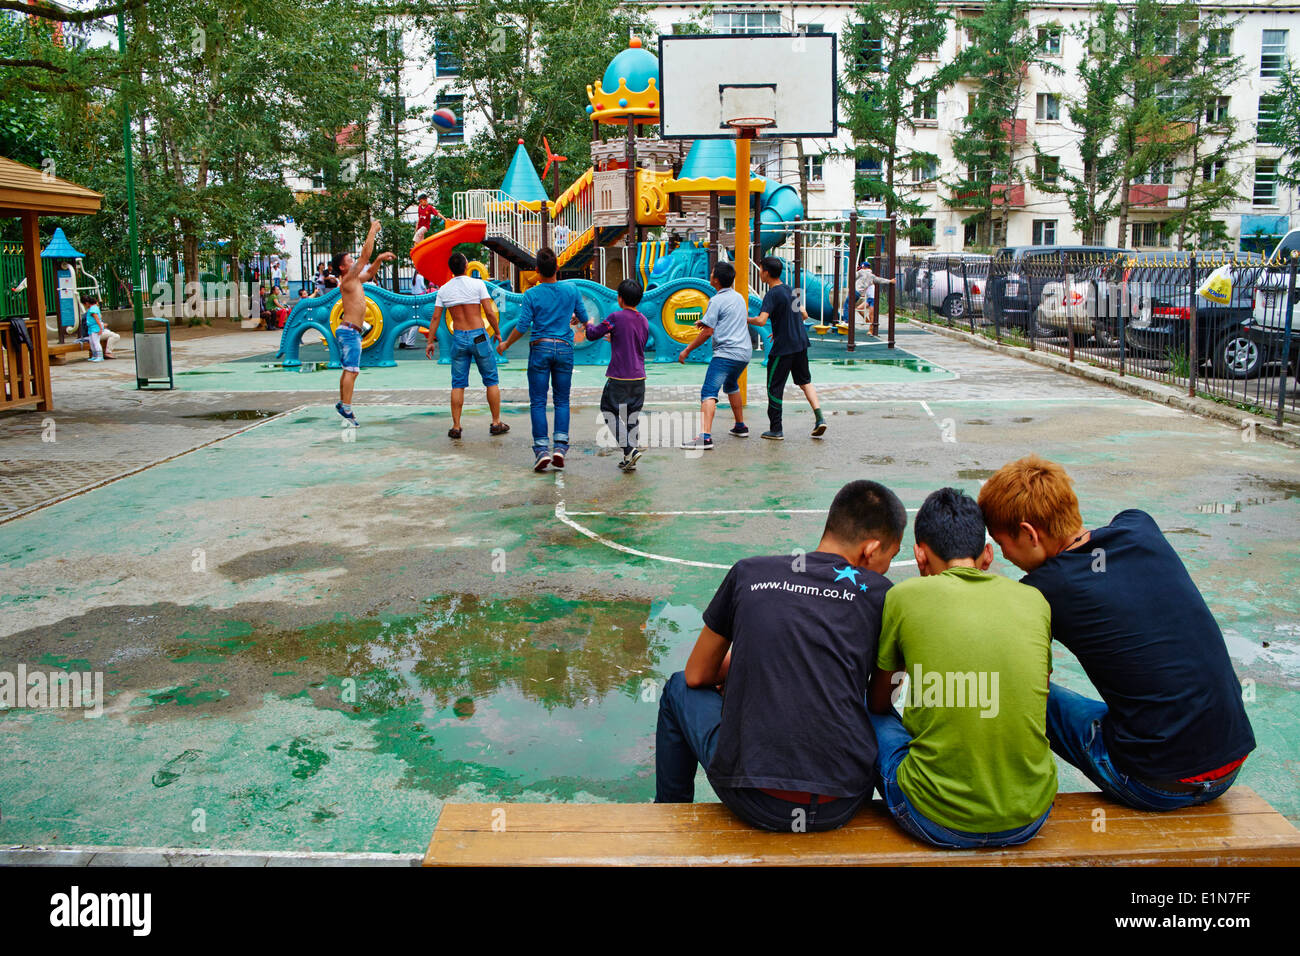 La Mongolie, Oulan Bator, joueurs de basket-ball dans le centre-ville Banque D'Images